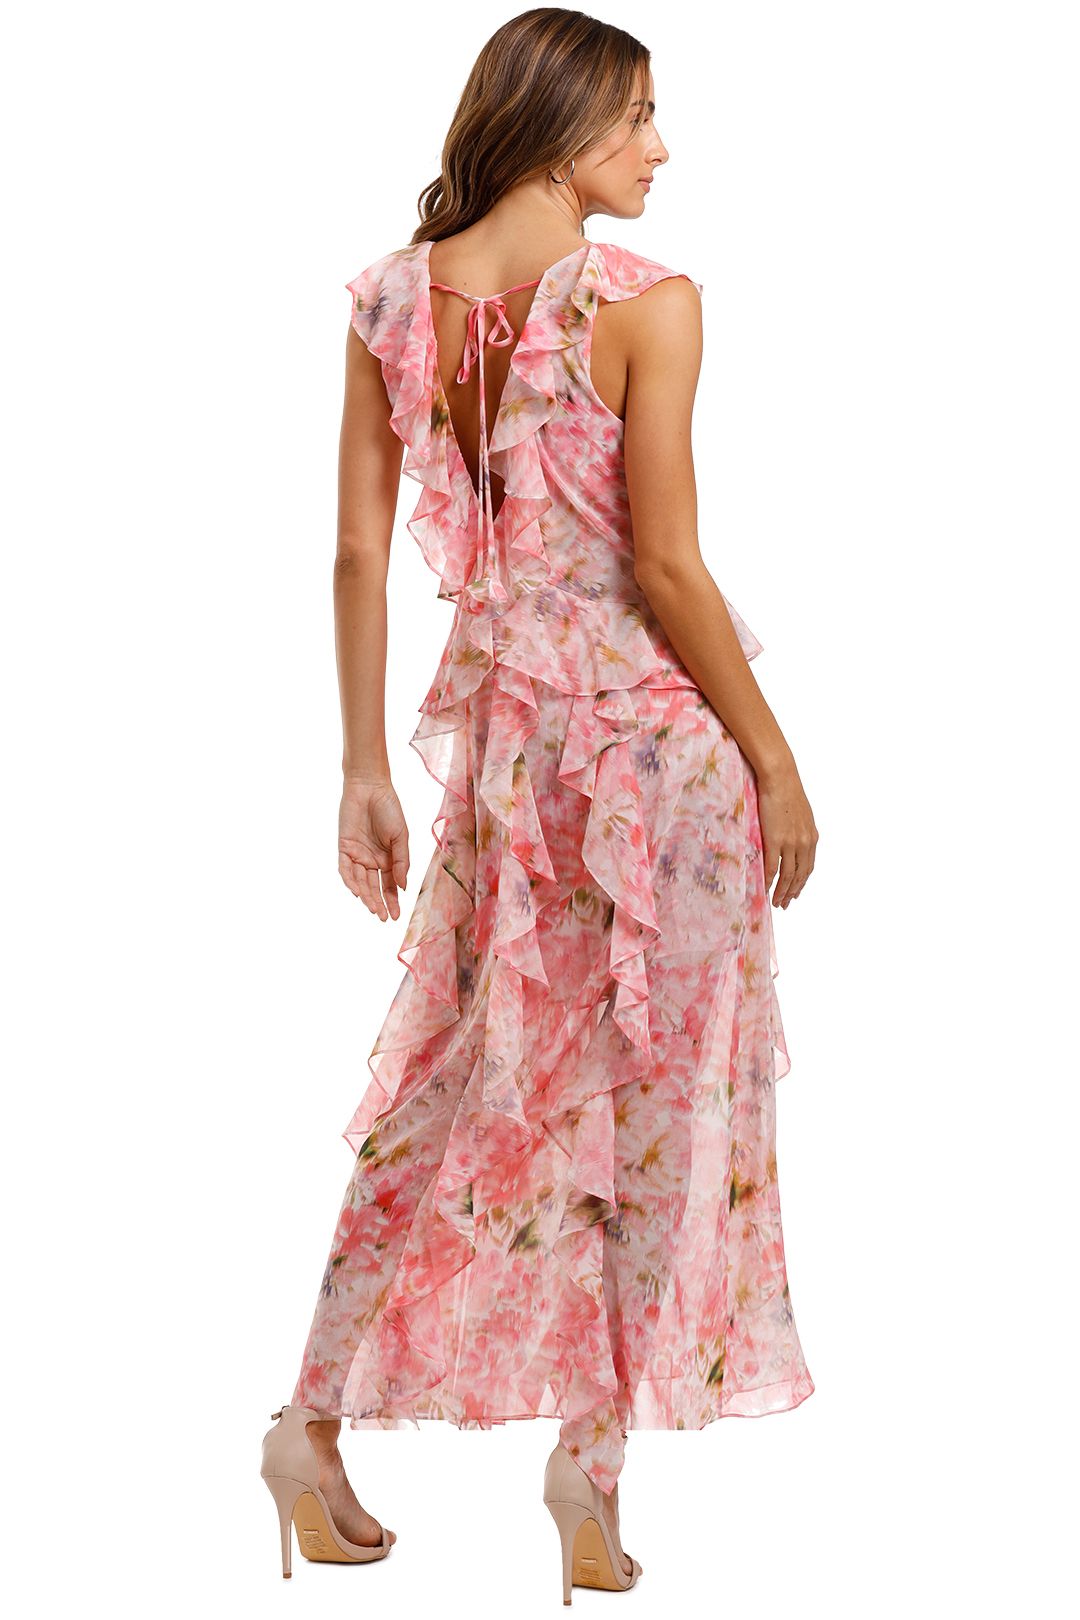 Misa LA Claudita Dress pink floral print